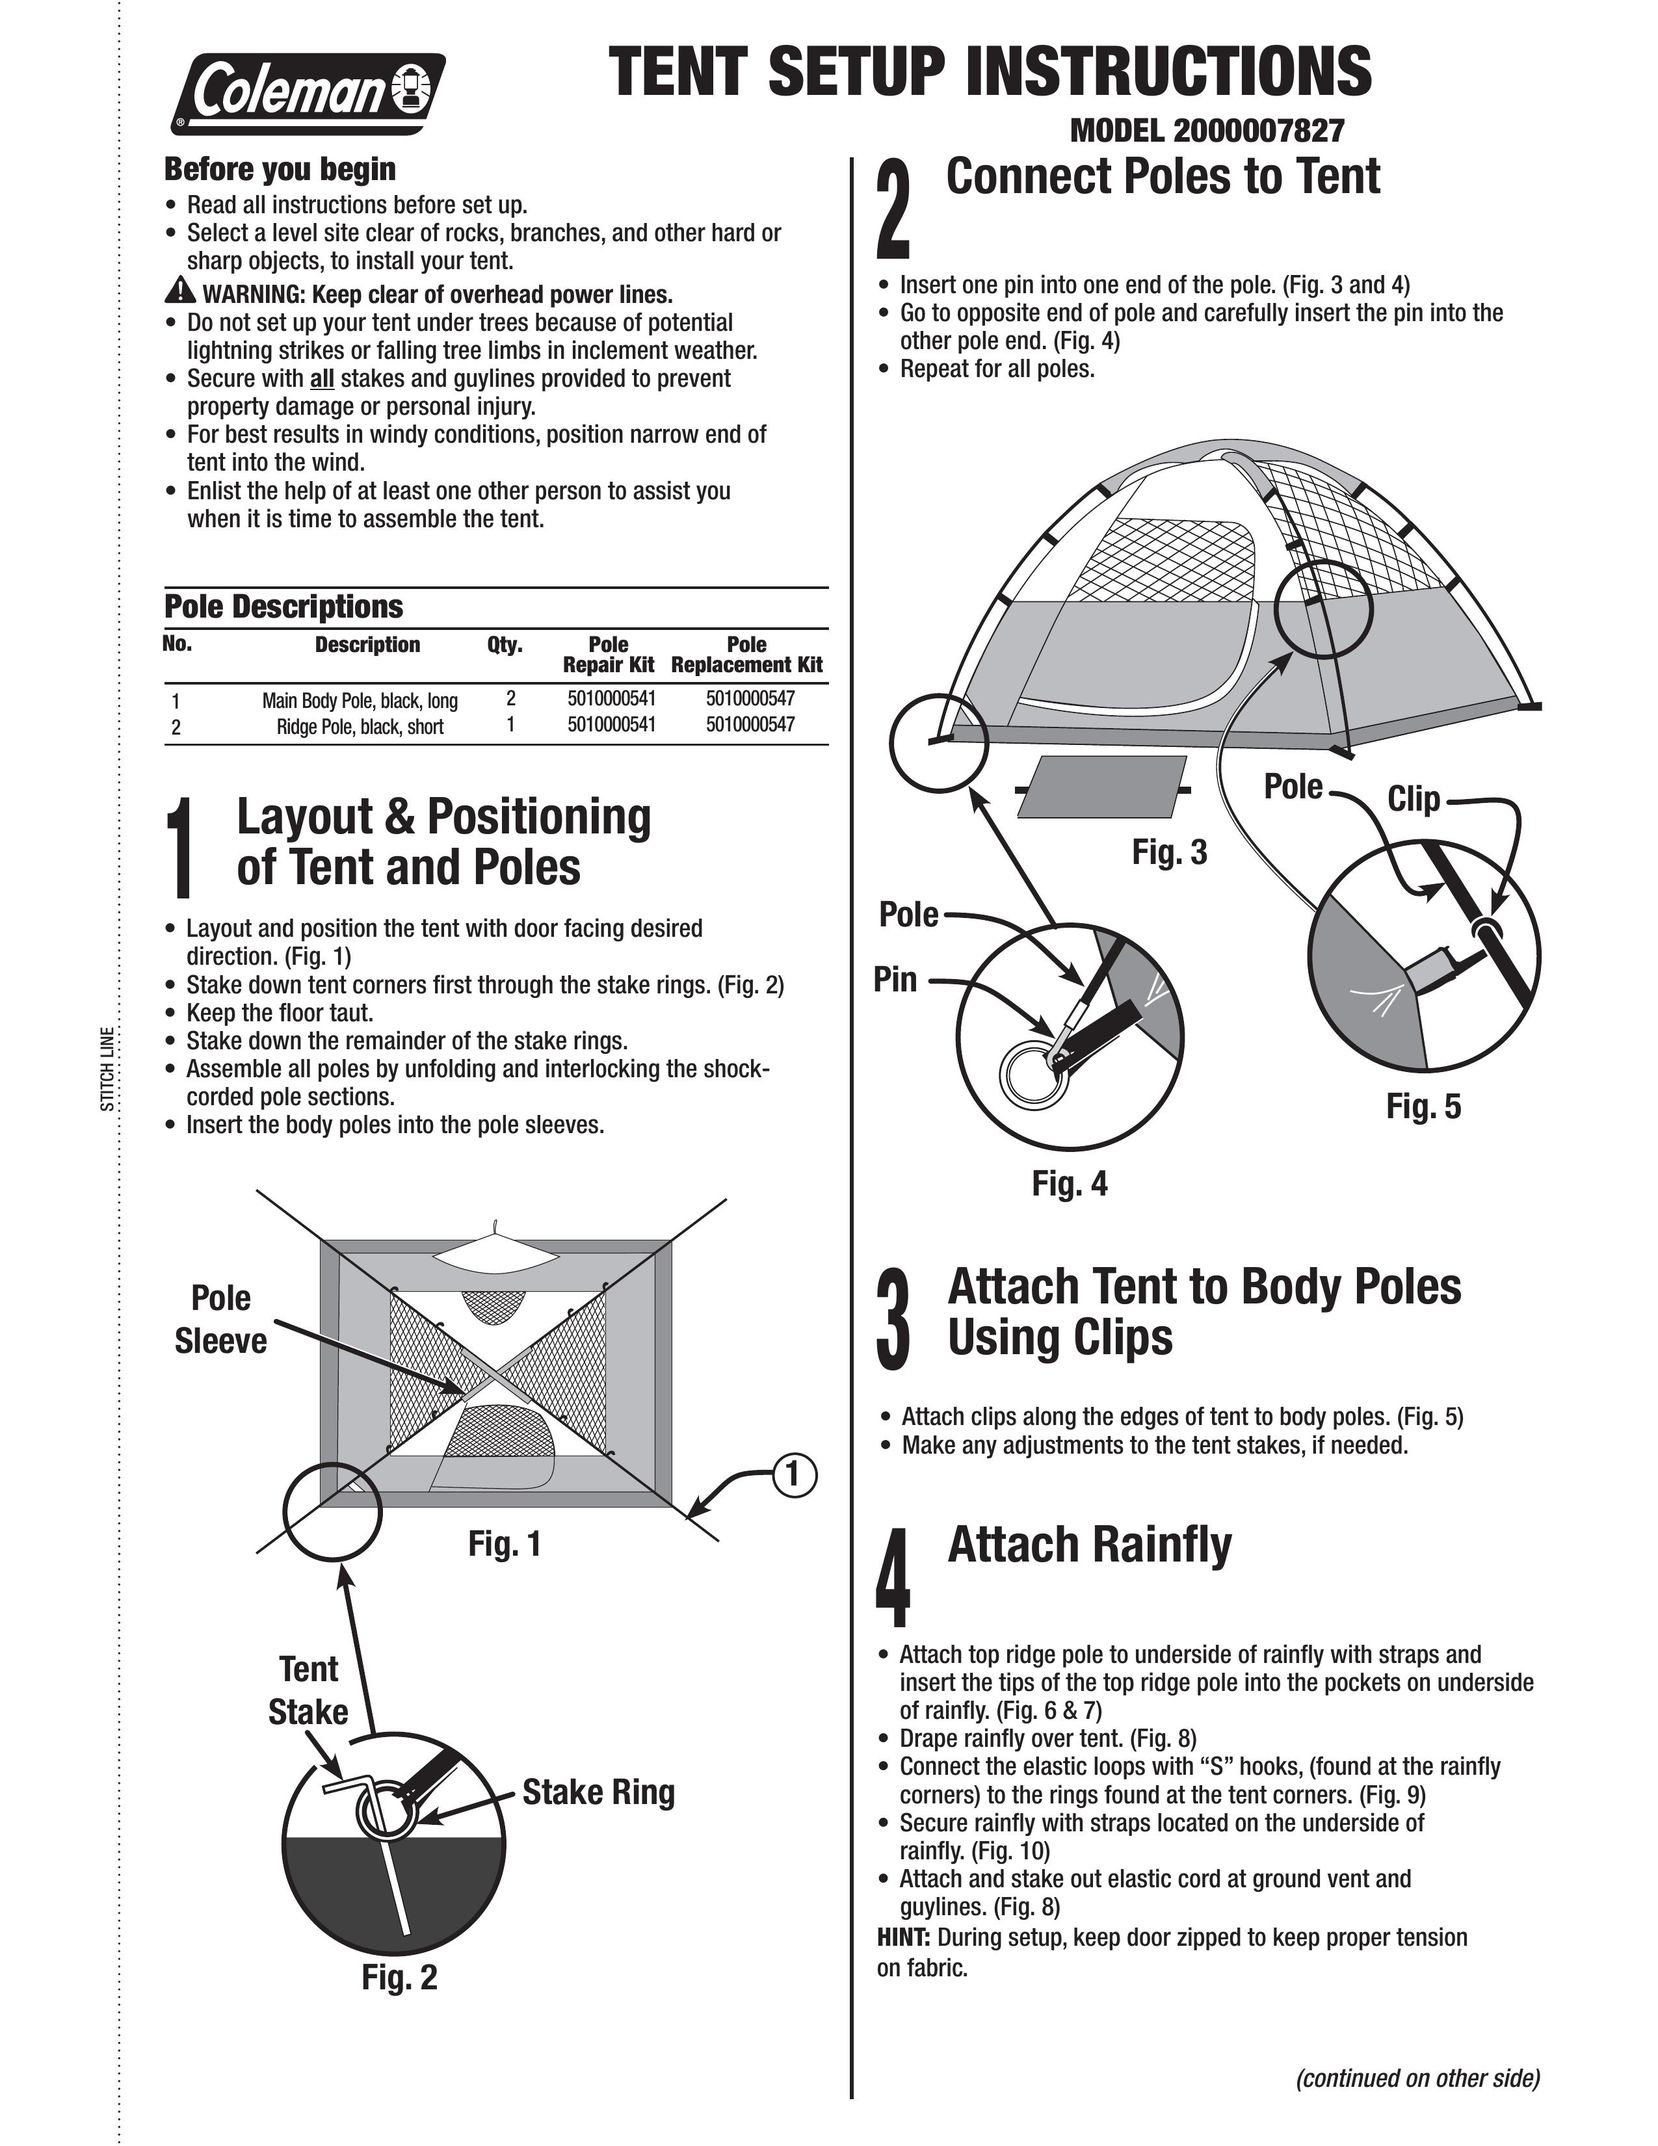 Coleman 2000007827 Tent User Manual